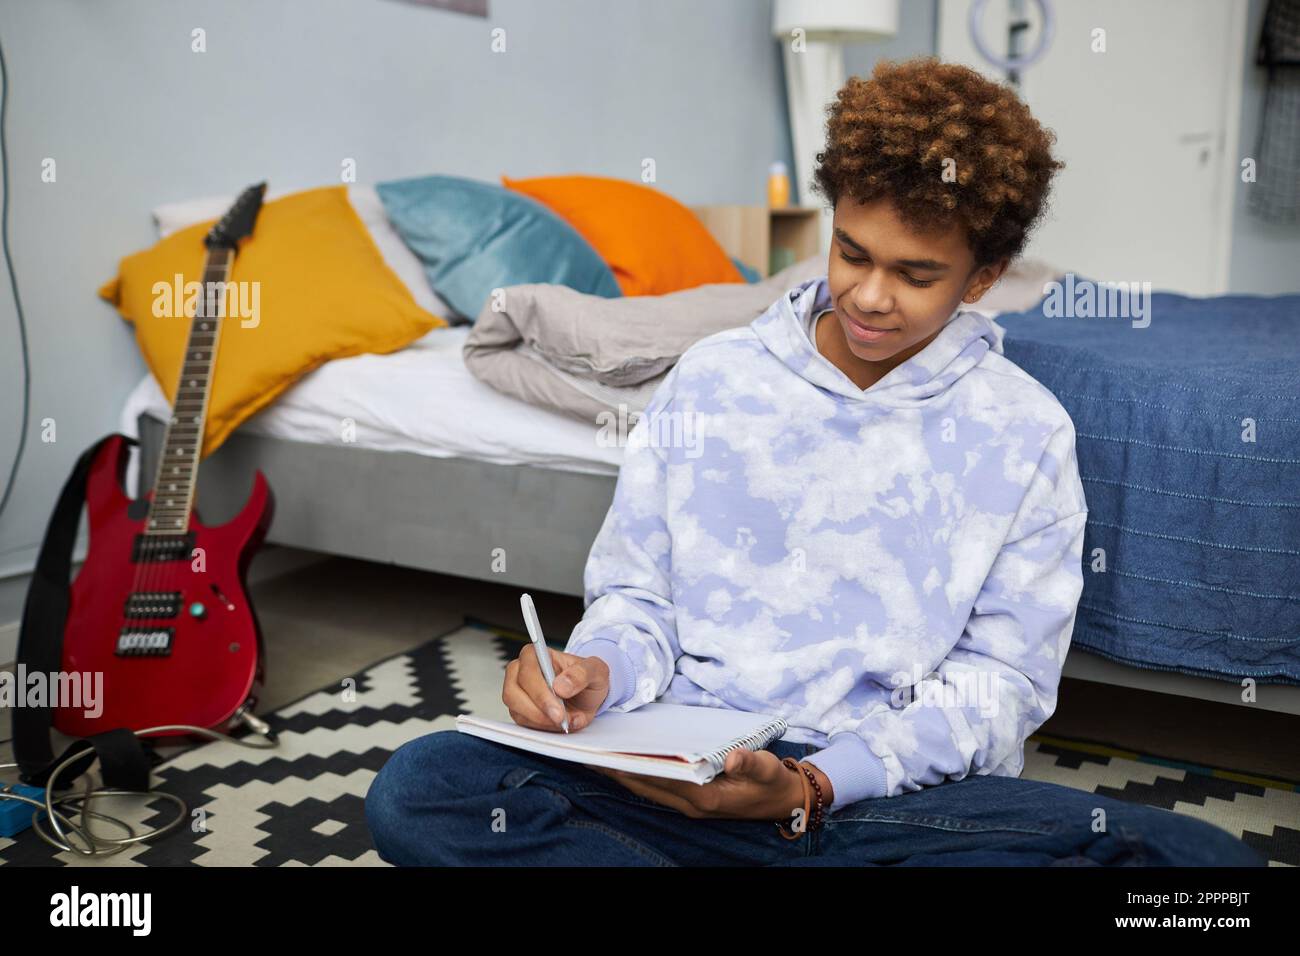 Jugendlicher Student in Freizeitkleidung, der sich Notizen in einem Copybook macht, während er auf dem Boden mit einem Doppelbett sitzt und die Hausaufgabe vorbereitet Stockfoto